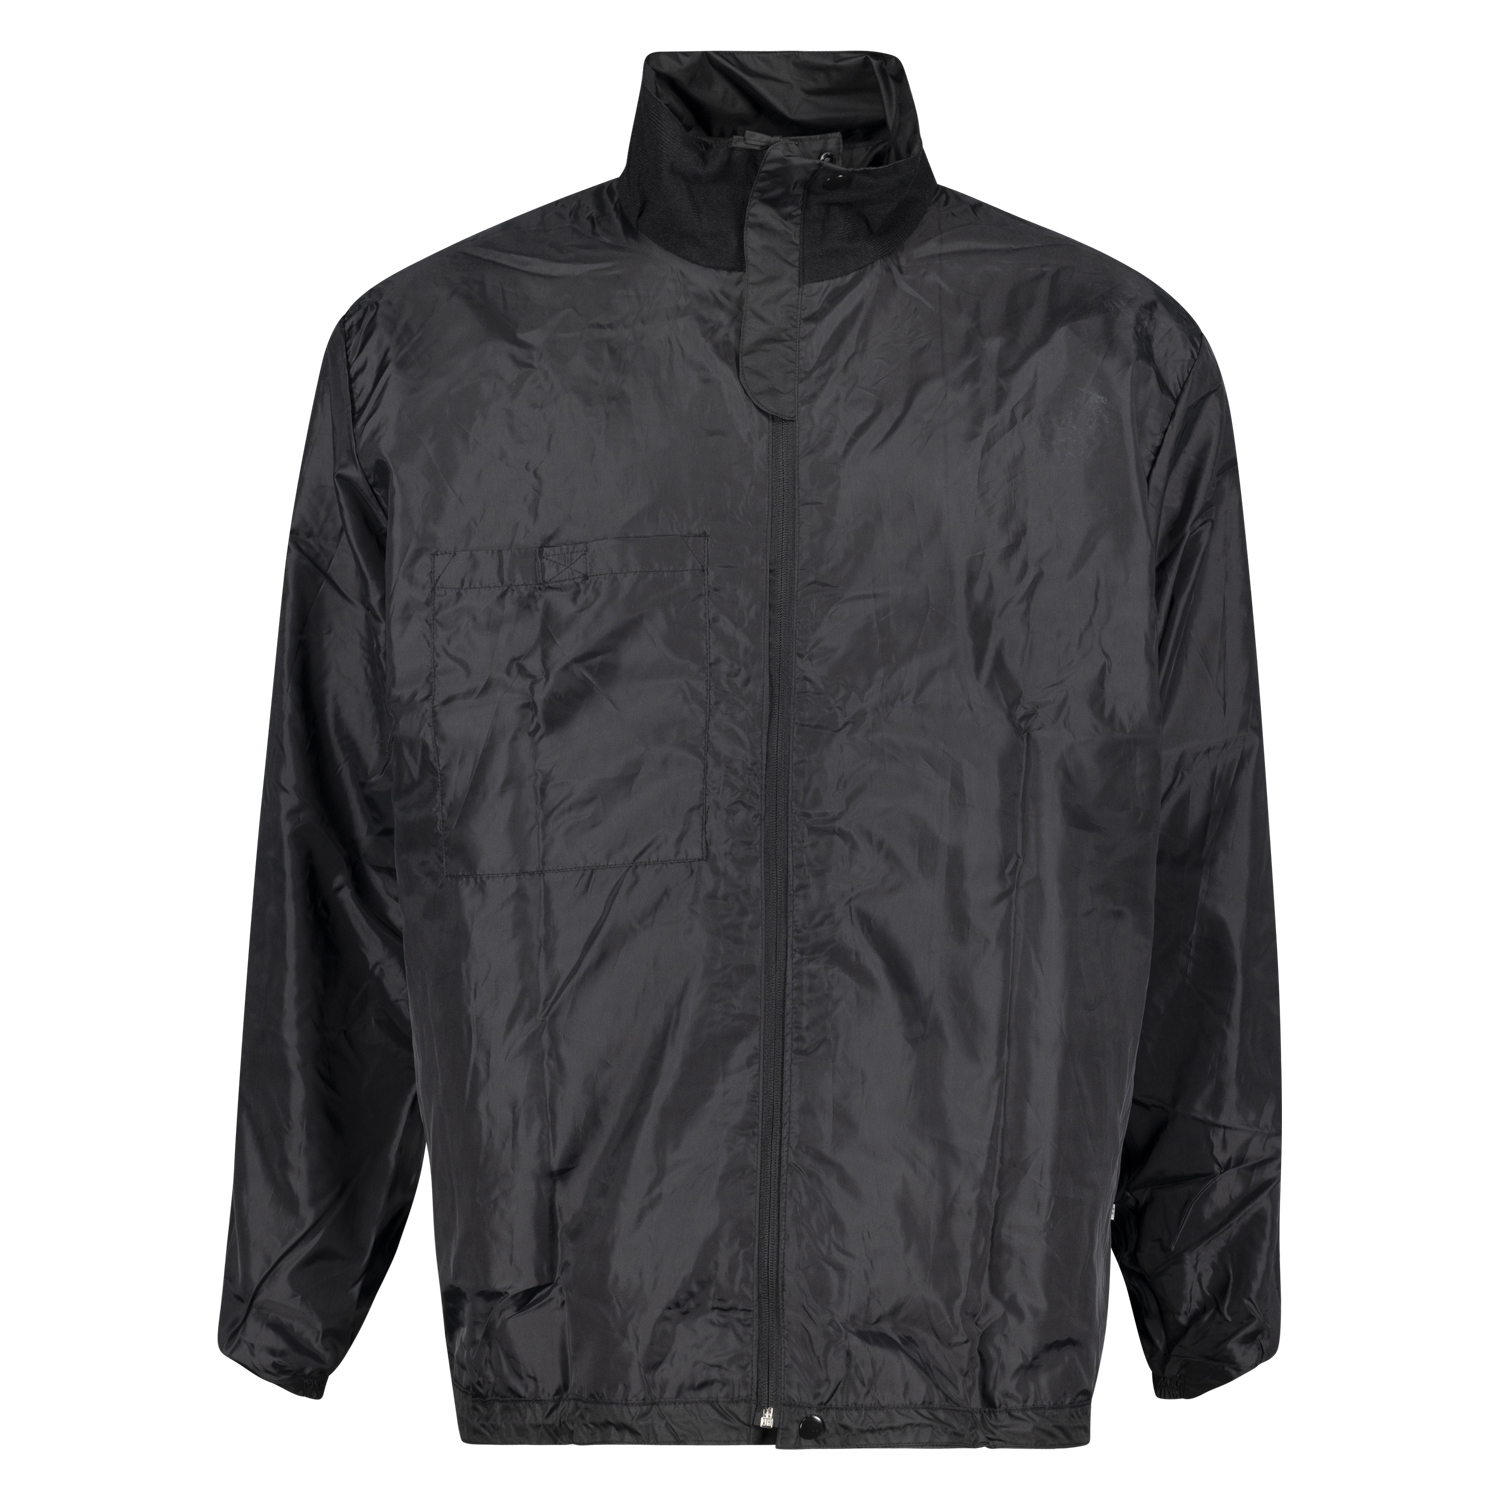 Schwarze Regen Jacke von Aero in großen Größen bis 8 XL